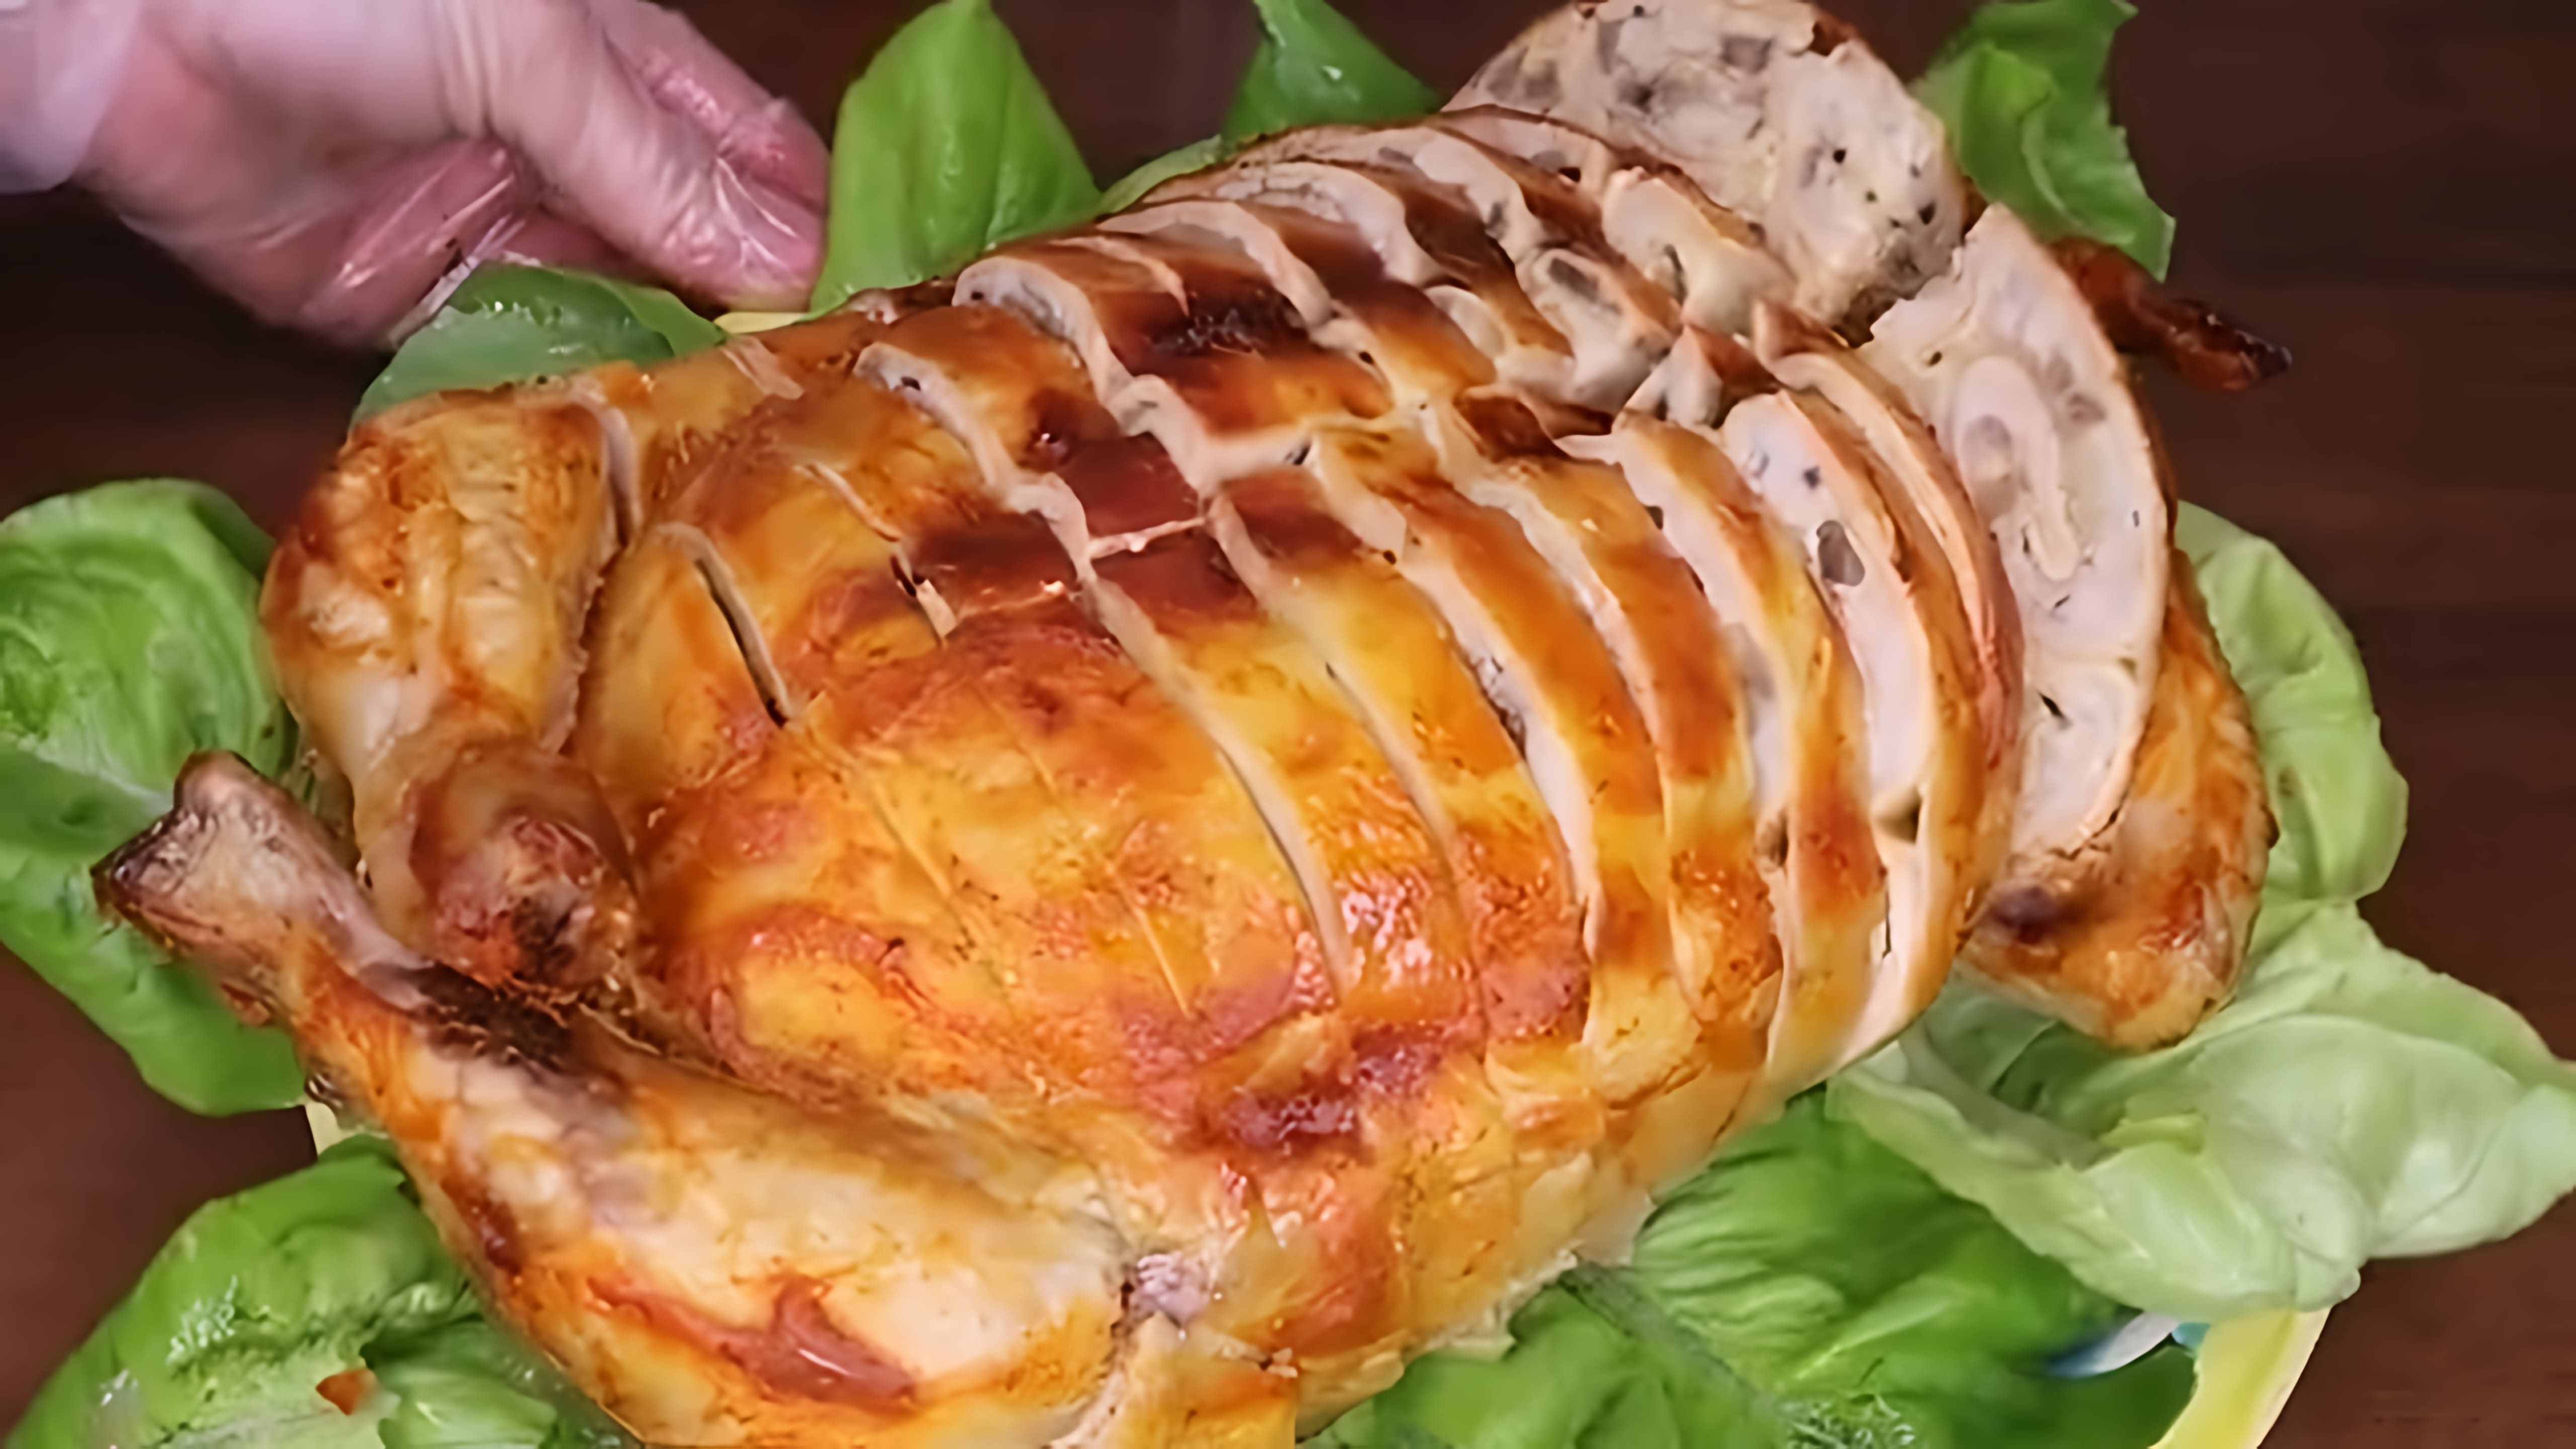 В этом видео демонстрируется рецепт приготовления курицы, фаршированной блинами